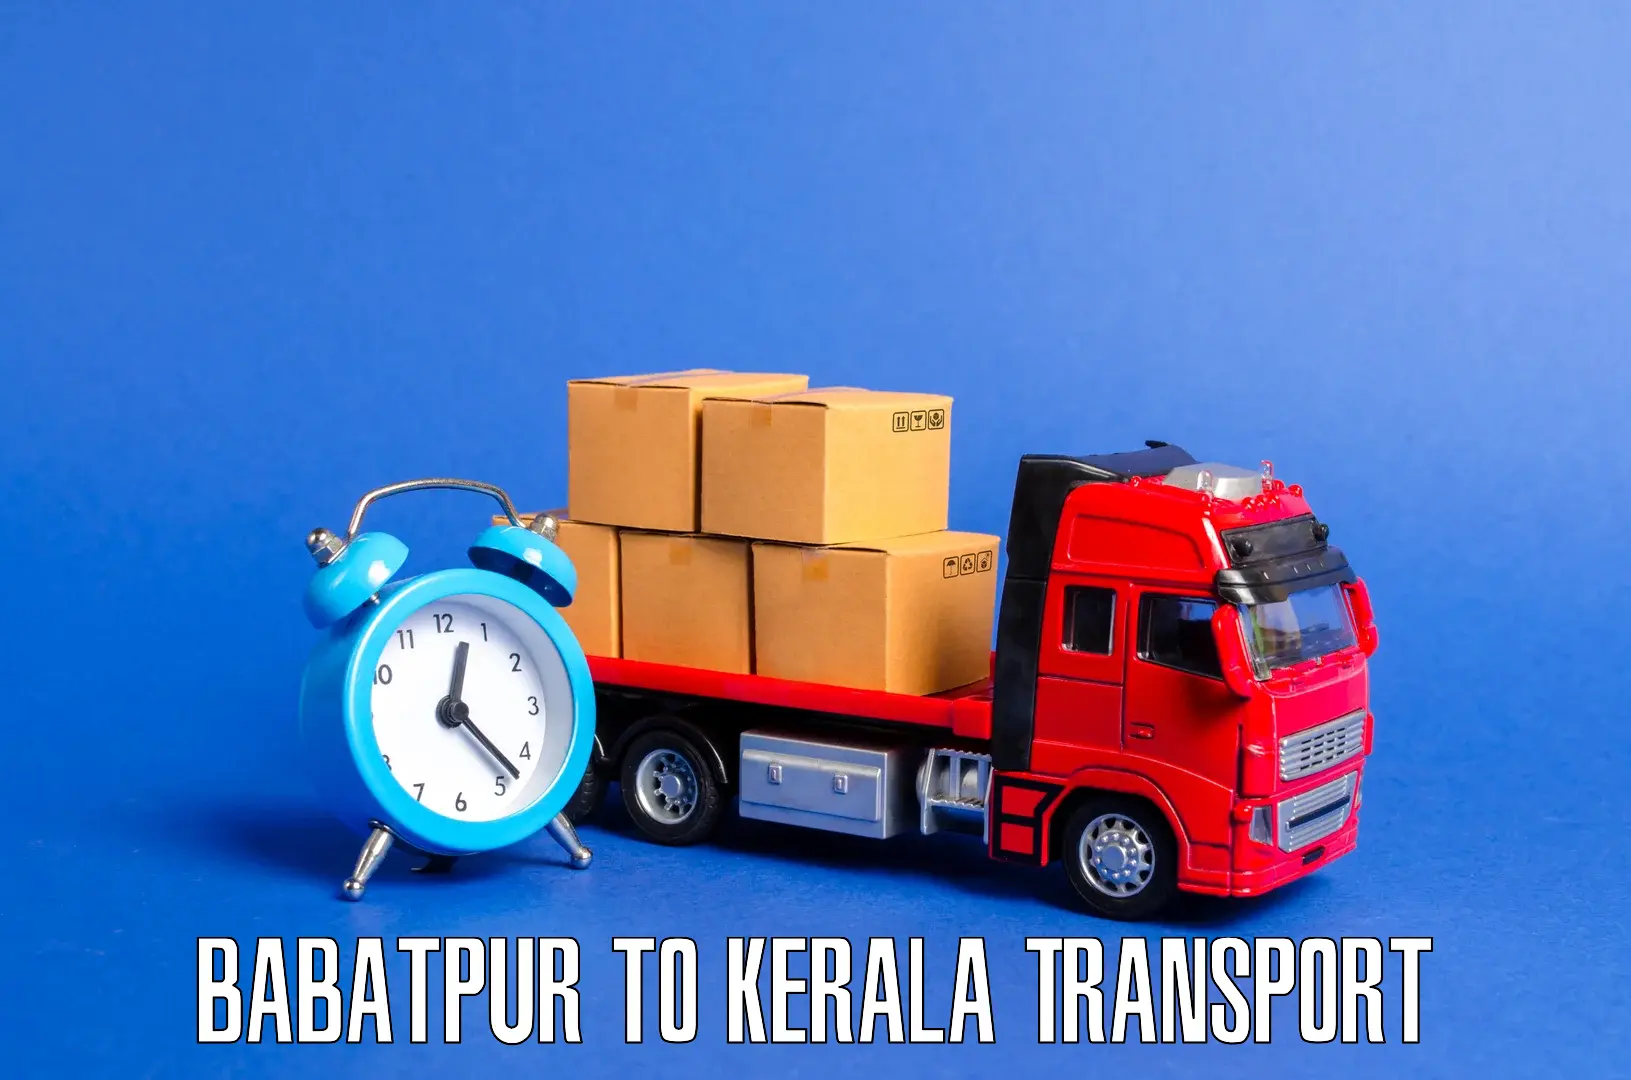 Interstate goods transport Babatpur to Kakkayam